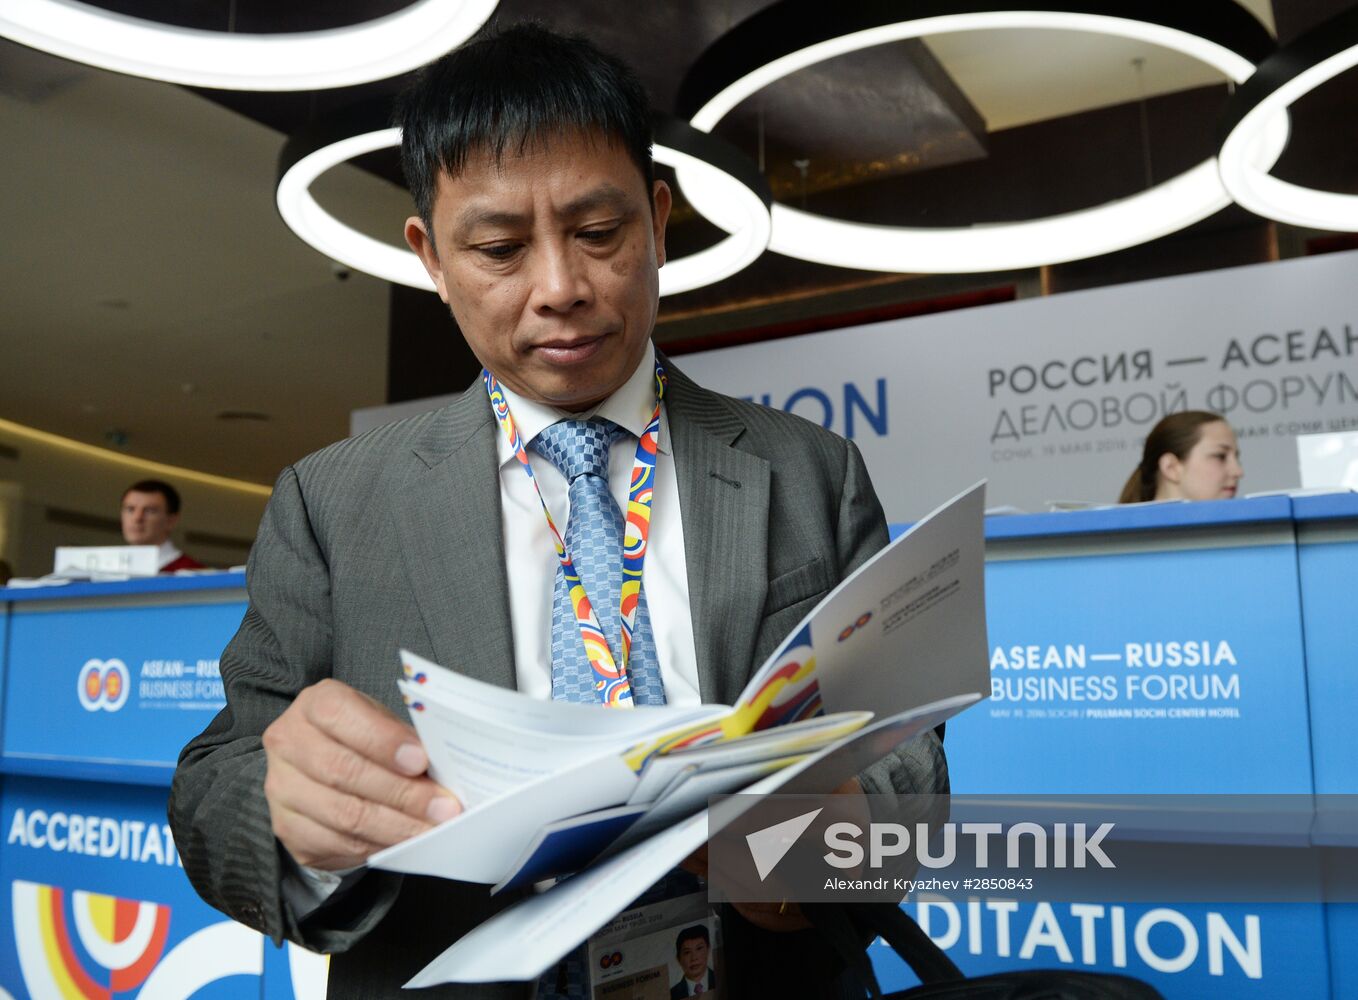 ASEAN-Russia Business Forum in Sochi